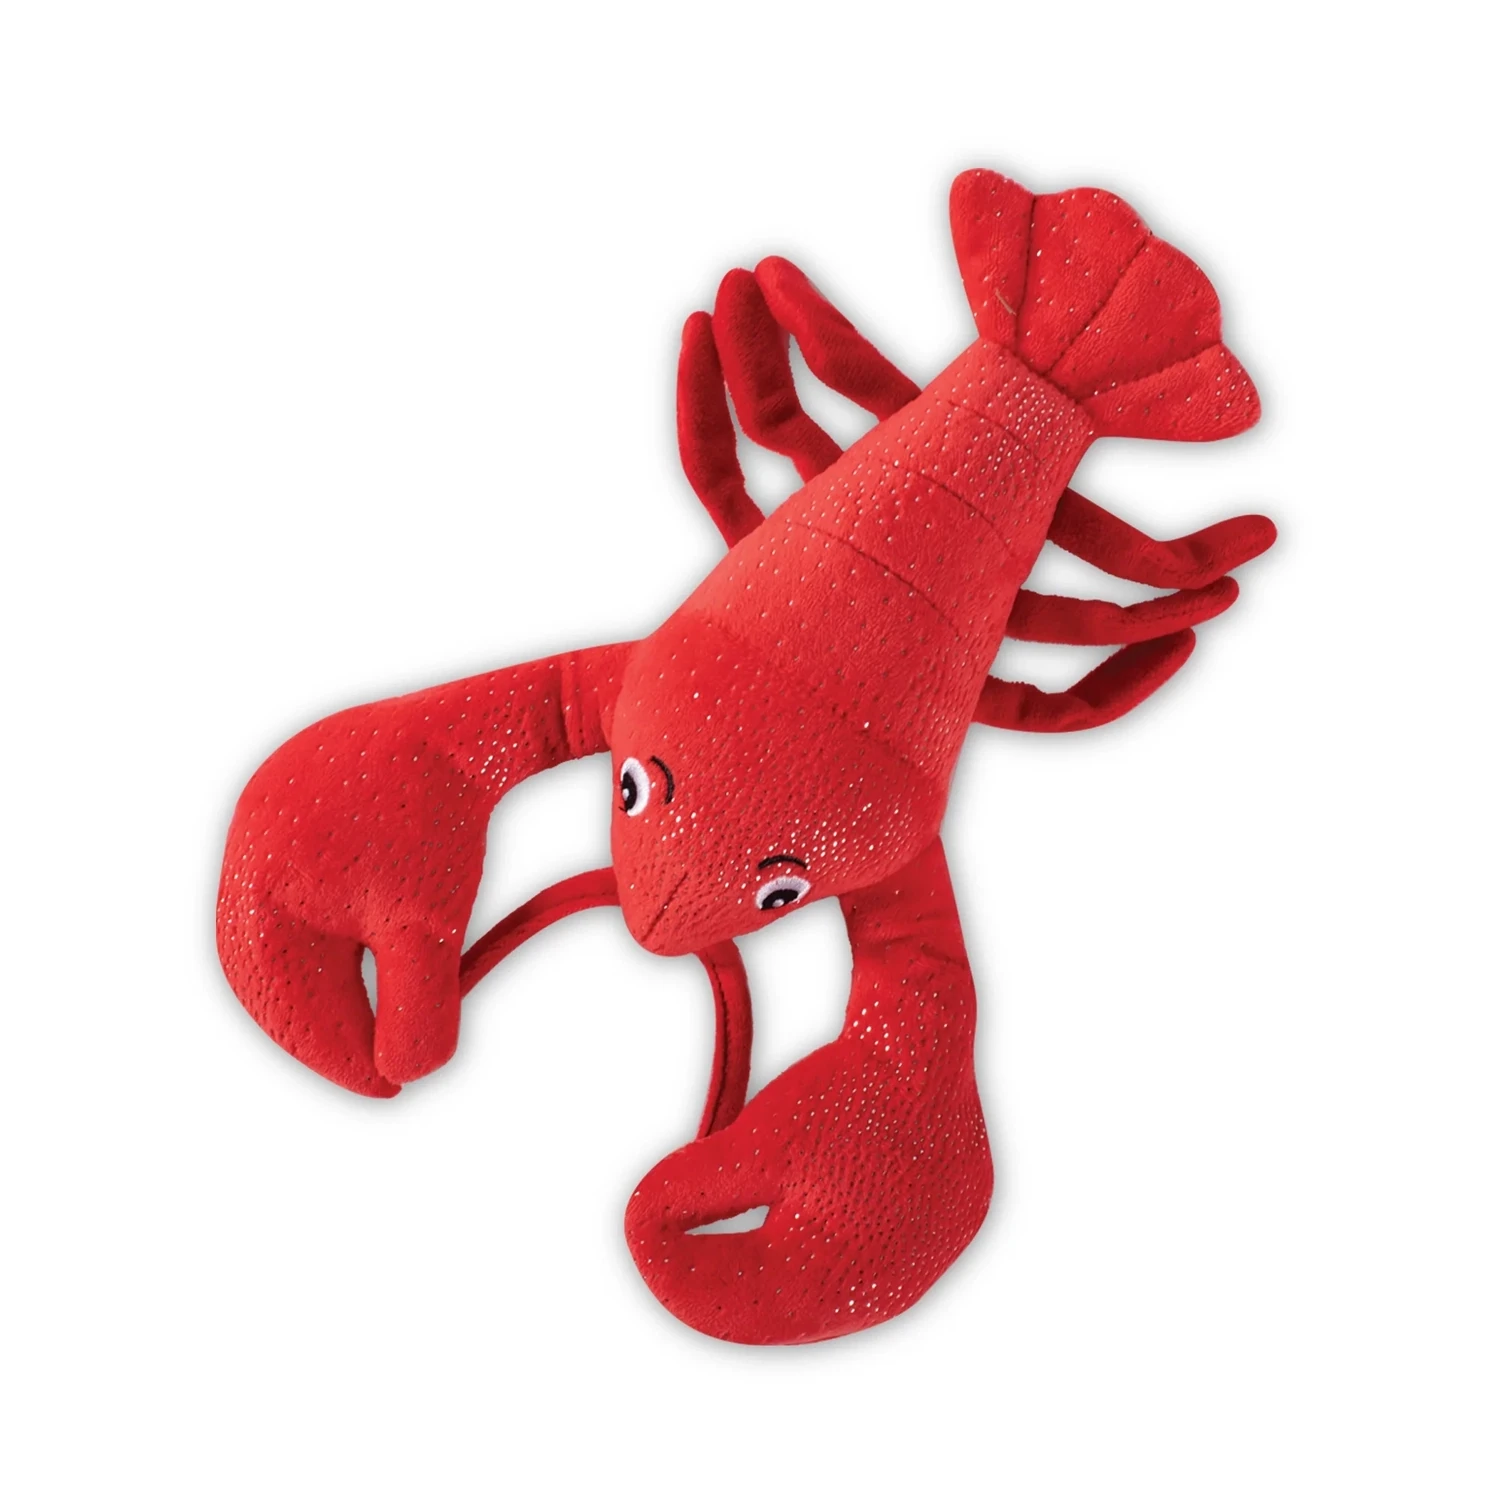 Fringe - You're my Lobster